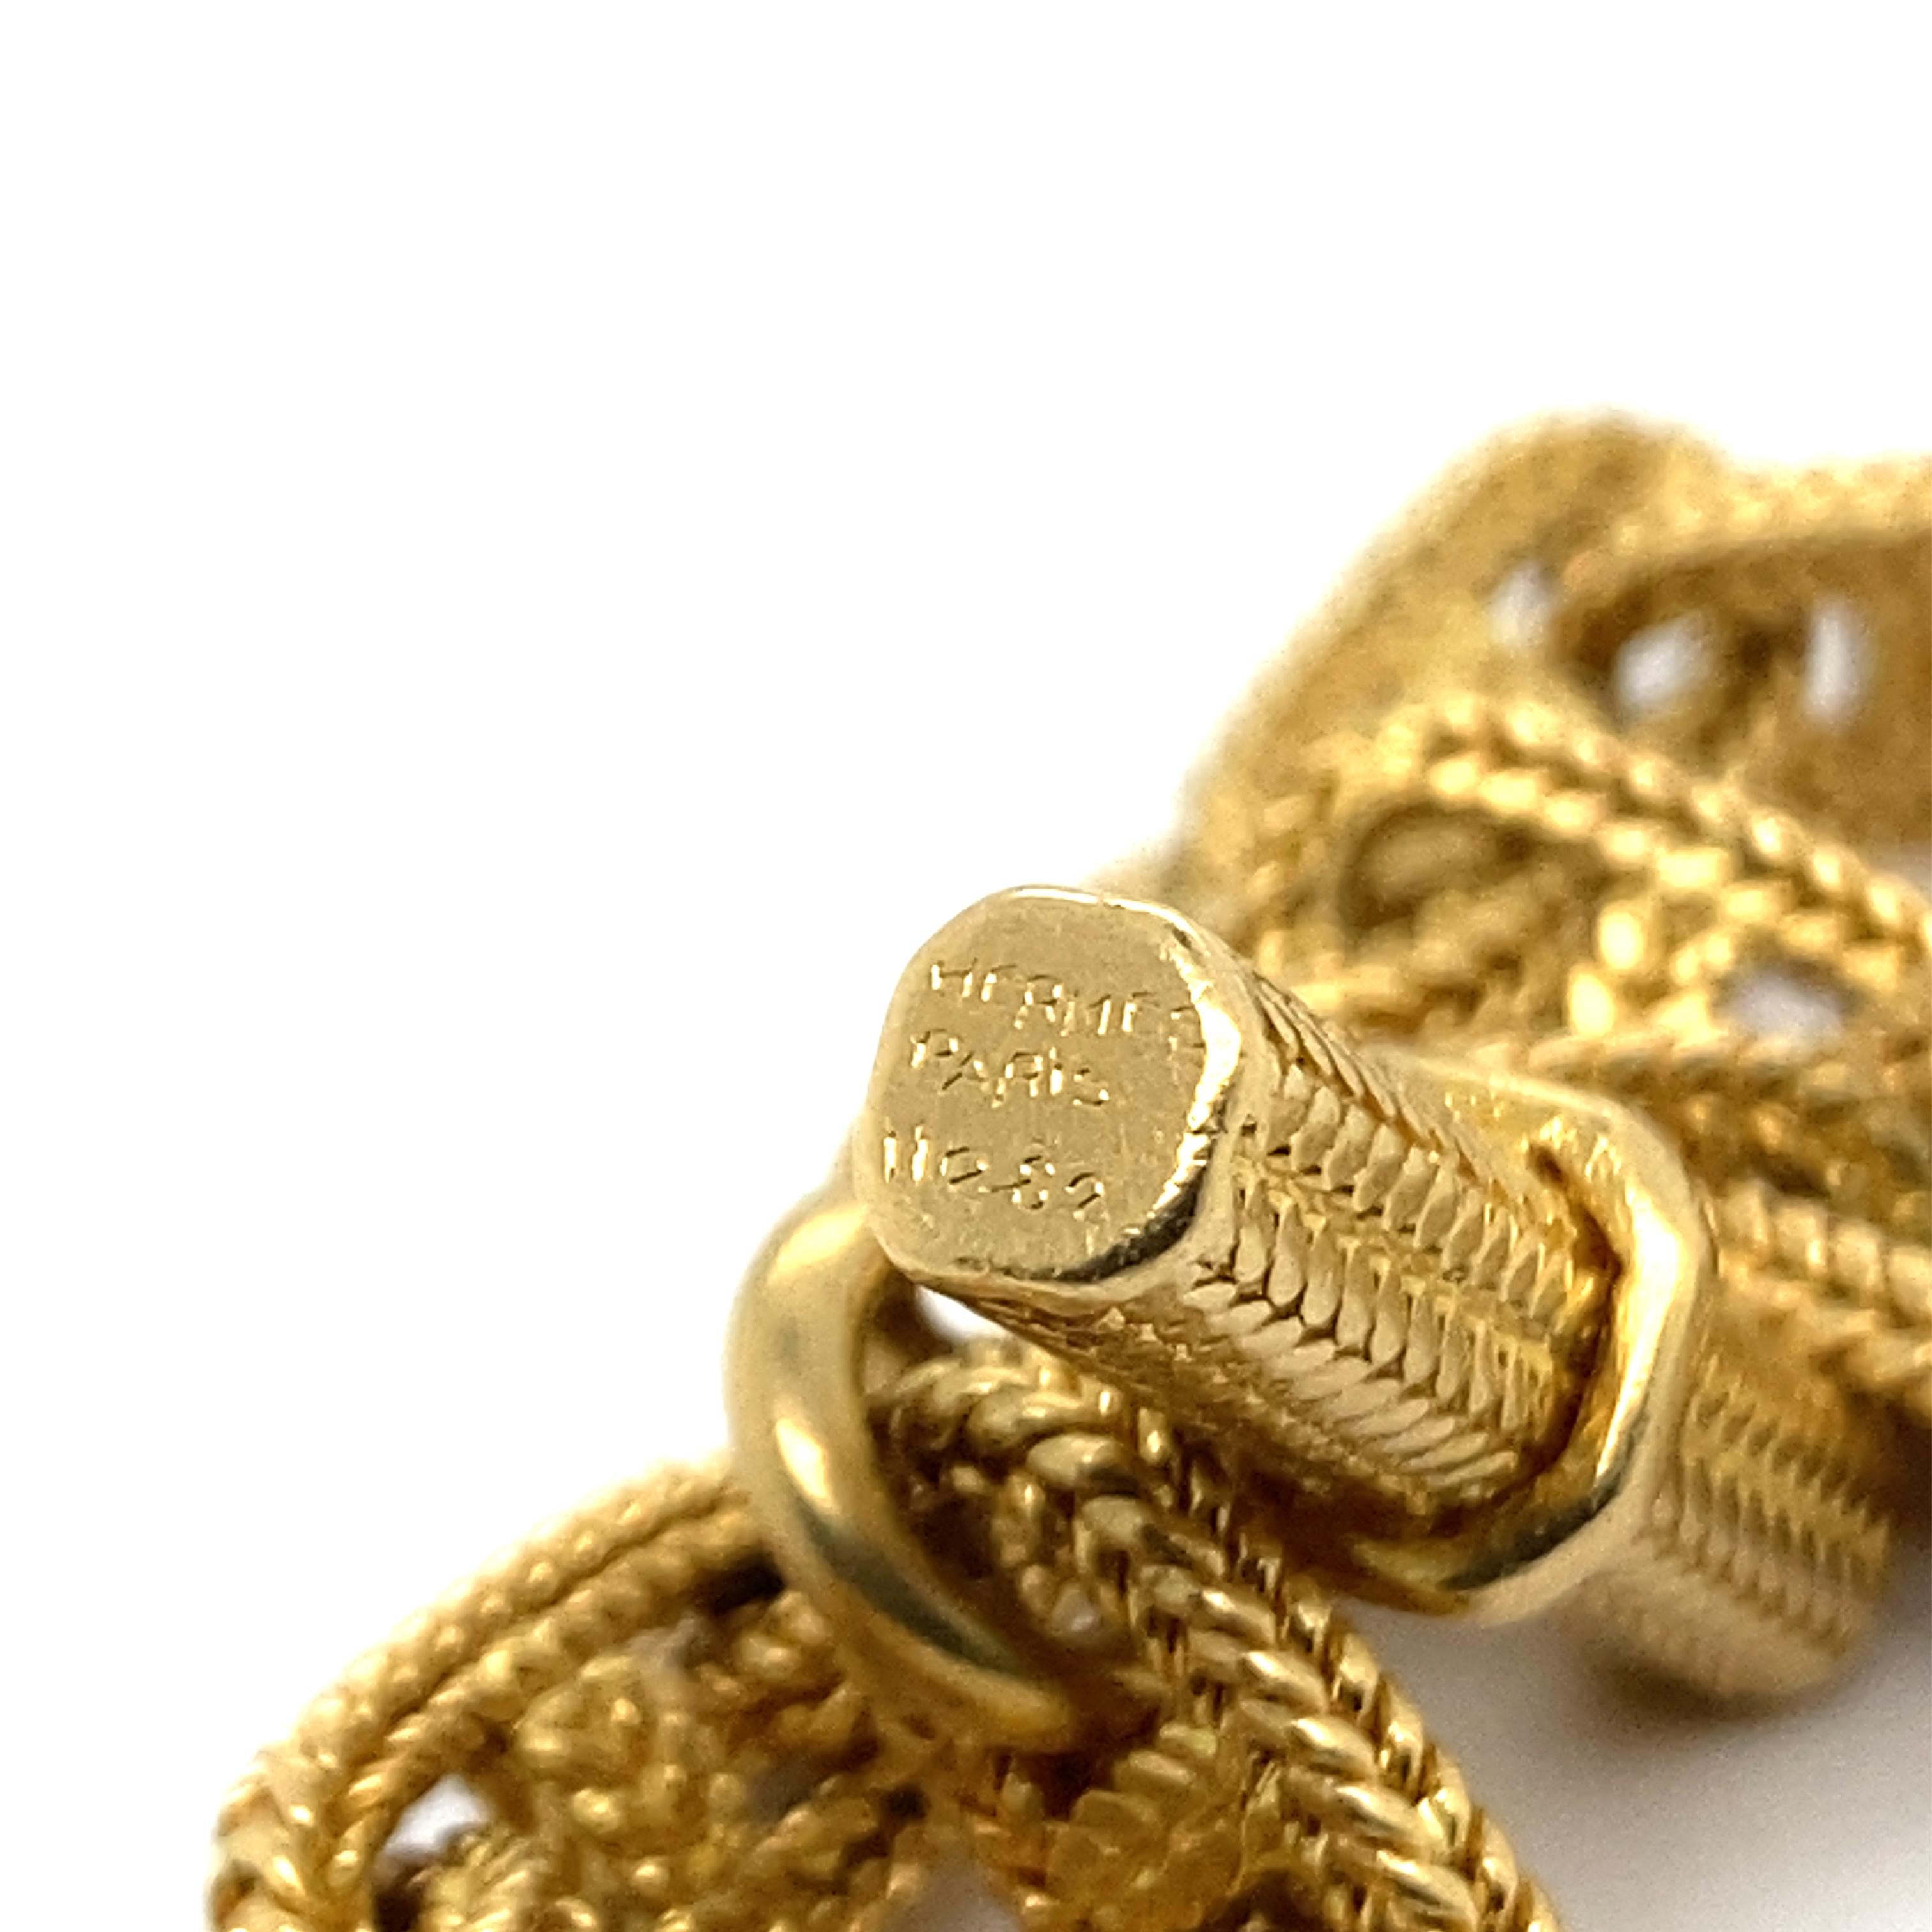 Découvrez ce superbe bracelet Hermès réalisé par Georges Lenfant, véritable chef-d'œuvre de la joaillerie des années 1980. Réalisé en or jaune massif 18 carats, ce bijou illustre parfaitement le style moderniste de l'époque, alliant élégance et